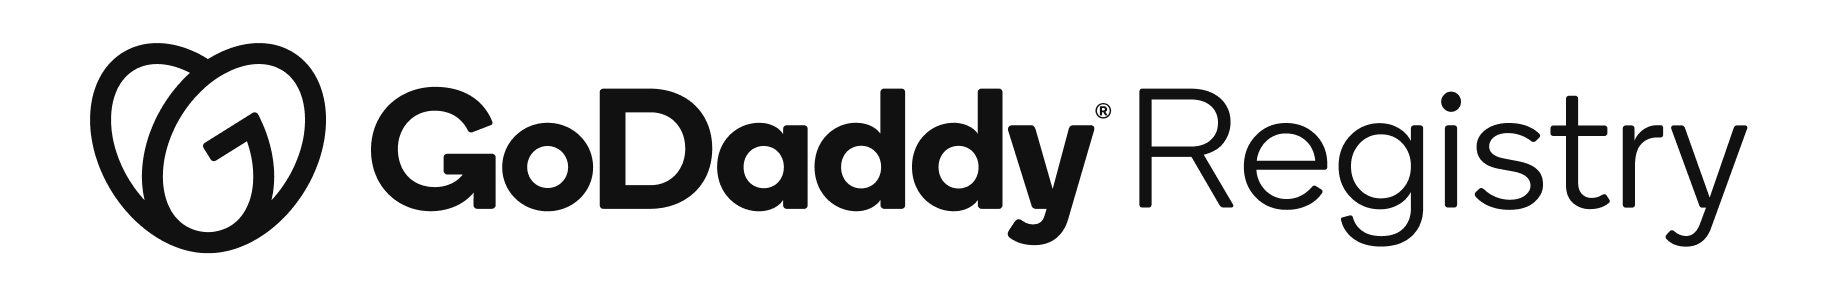 GoDaddy Registry